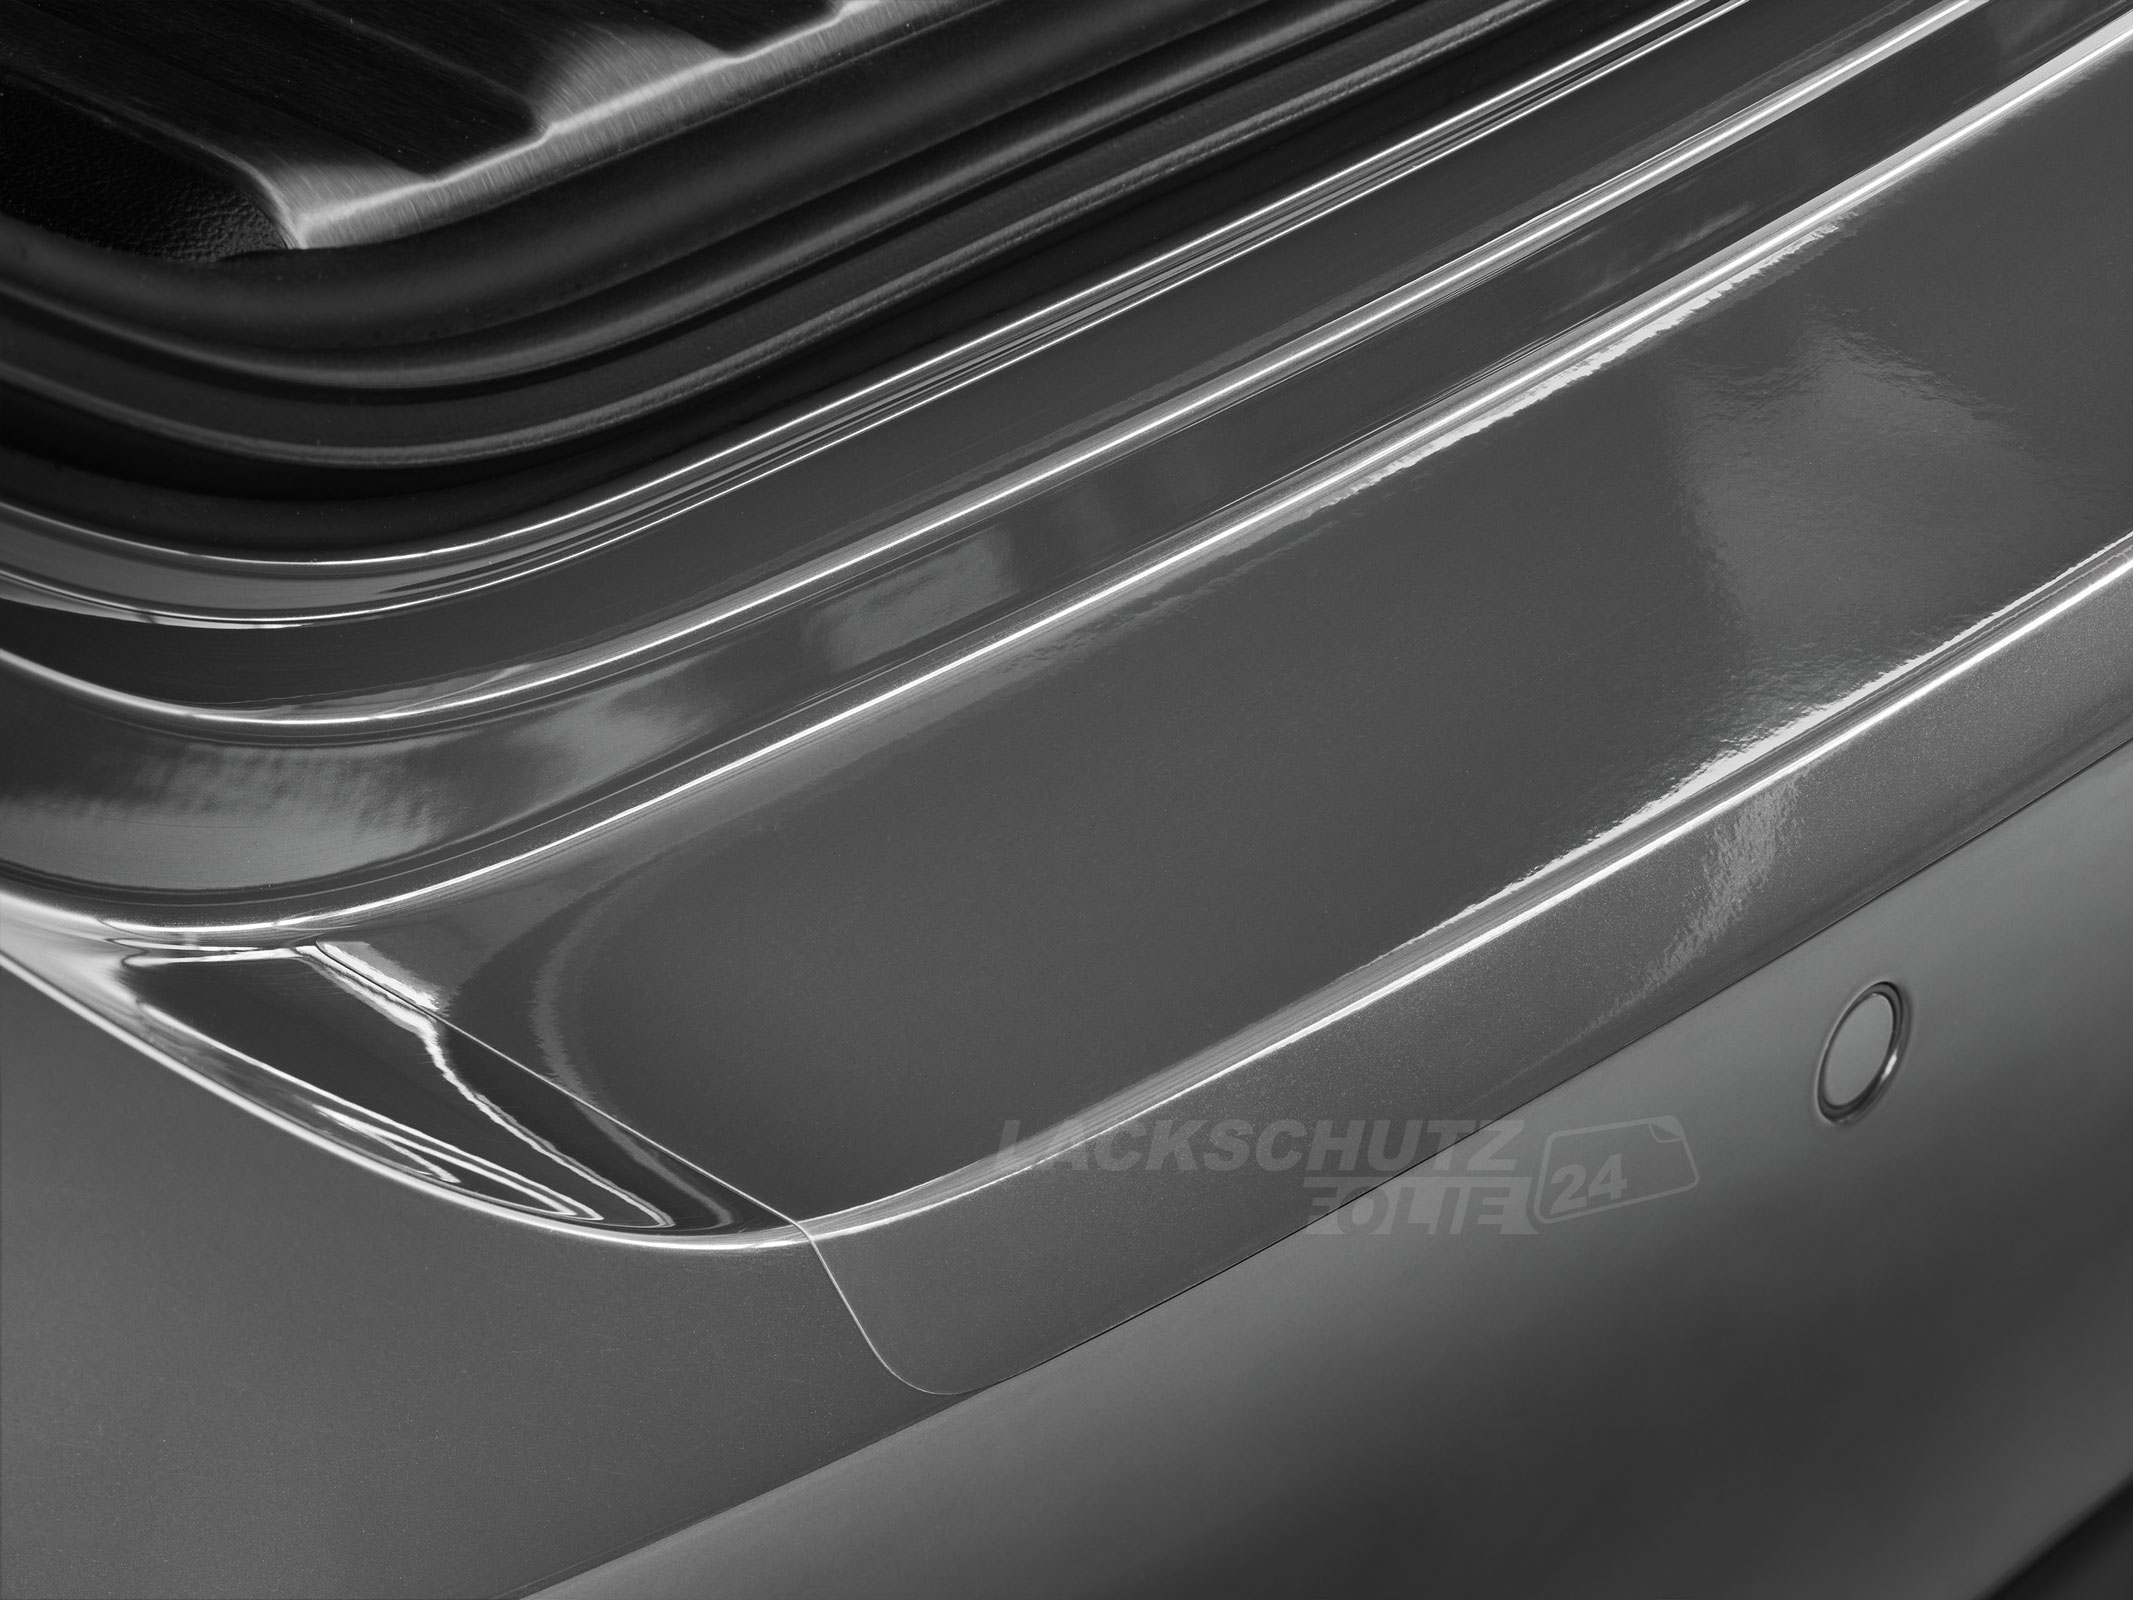 Ladekantenschutzfolie - Transparent Glatt Hochglänzend 150 µm stark für Mitsubishi Colt Typ Z30, Facelift, BJ 2009-2012